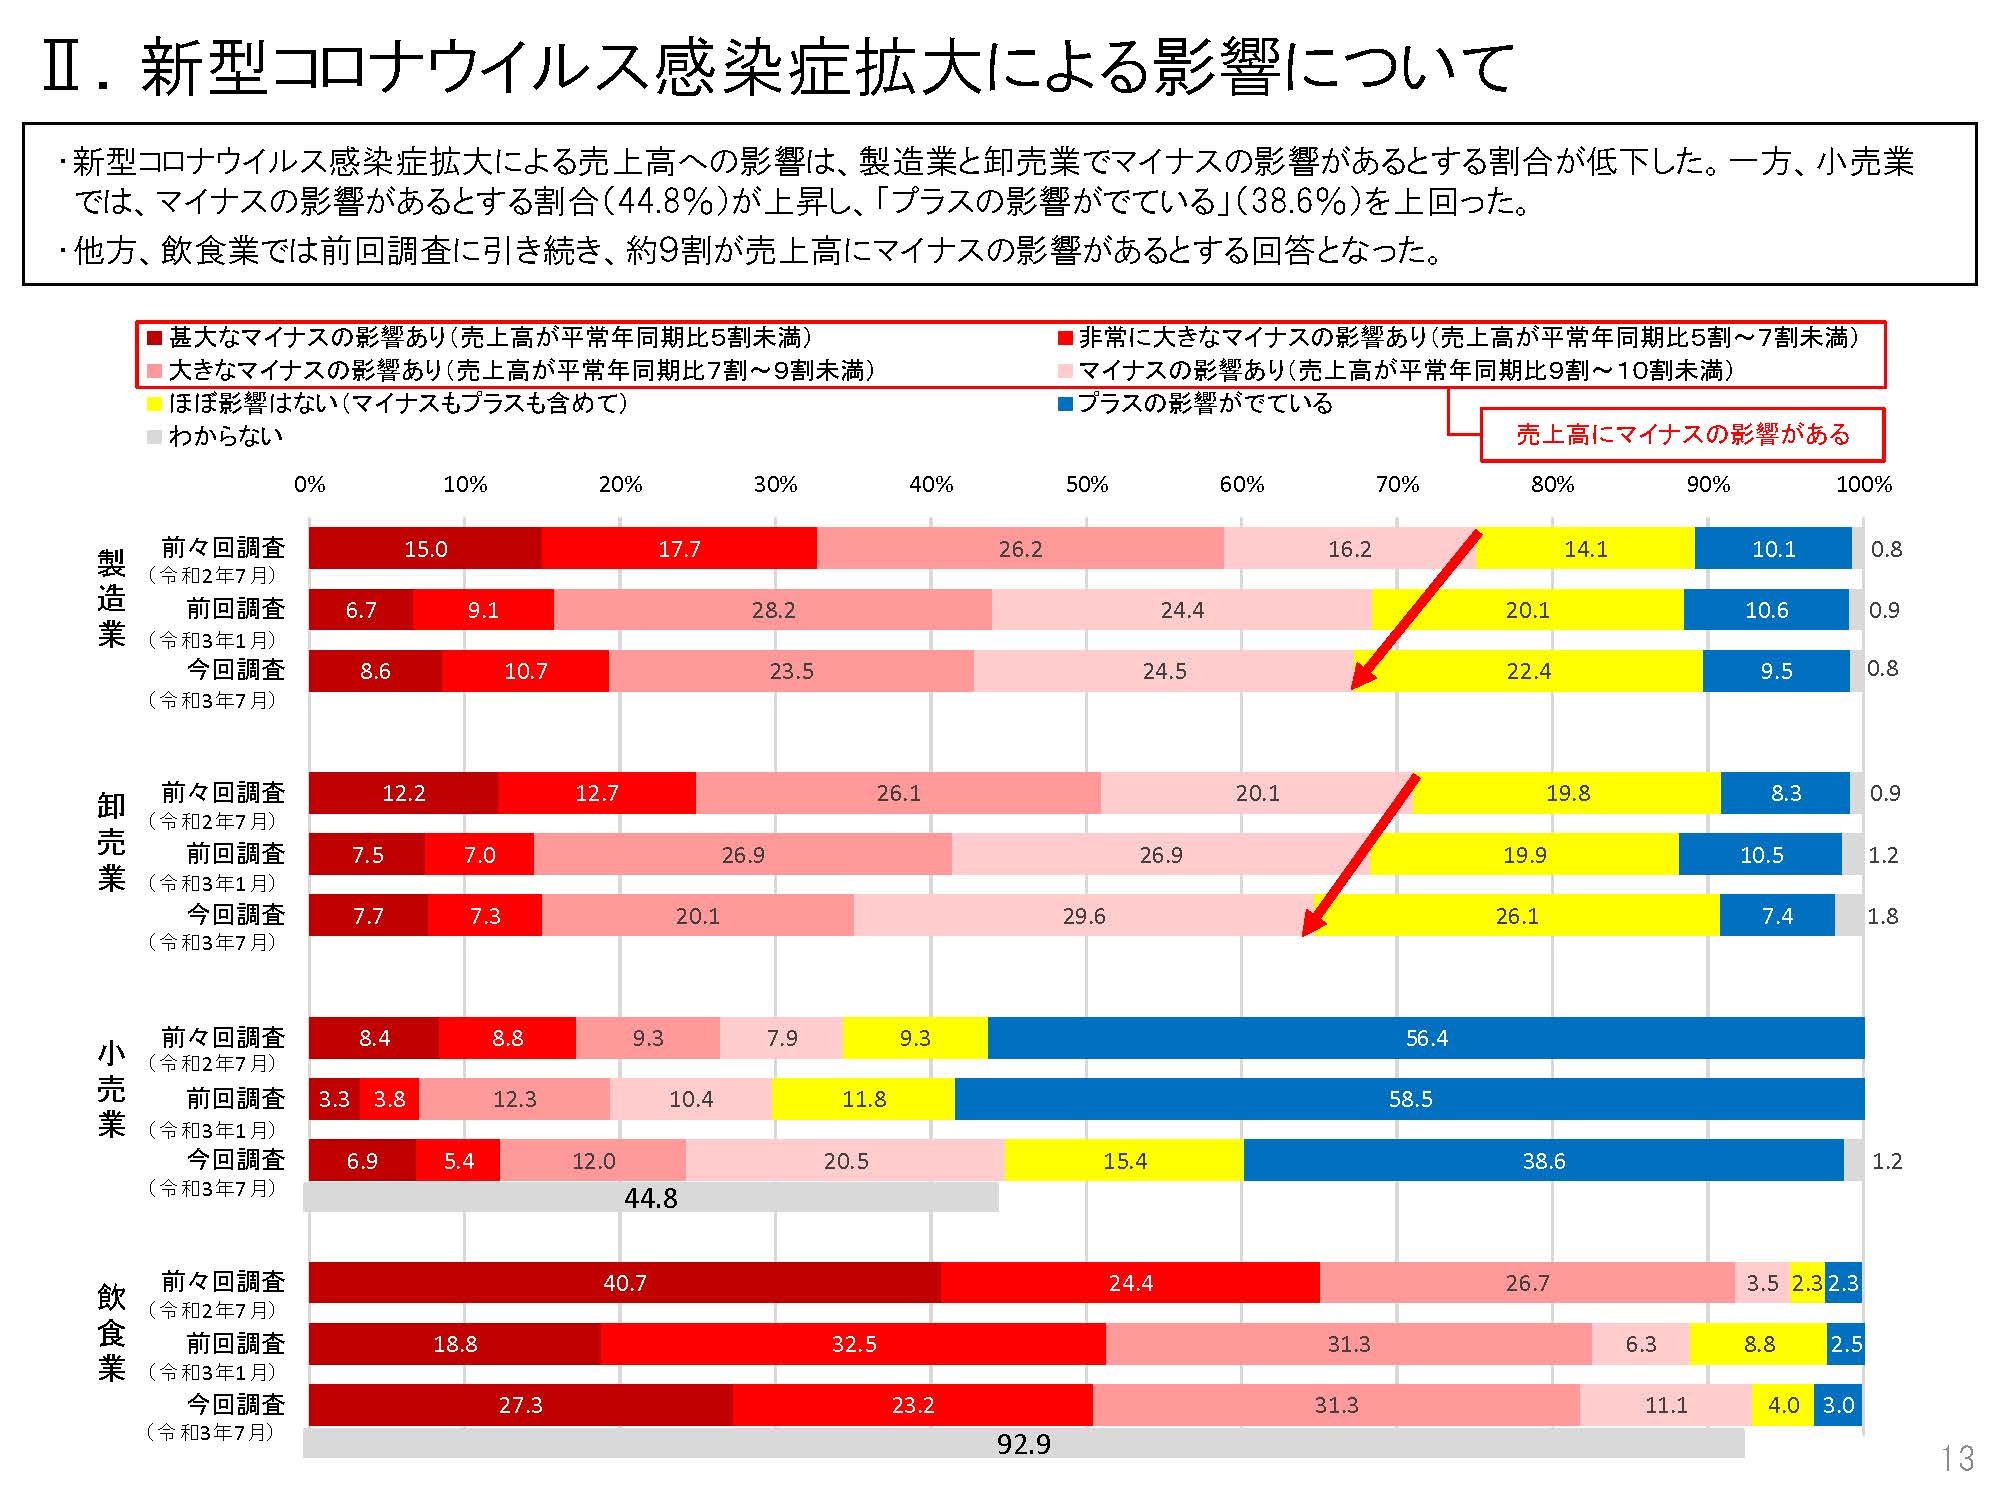 【日本政策金融公庫より】食品企業の景況や新型コロナウイルス感染症拡大の影響について調査しました。